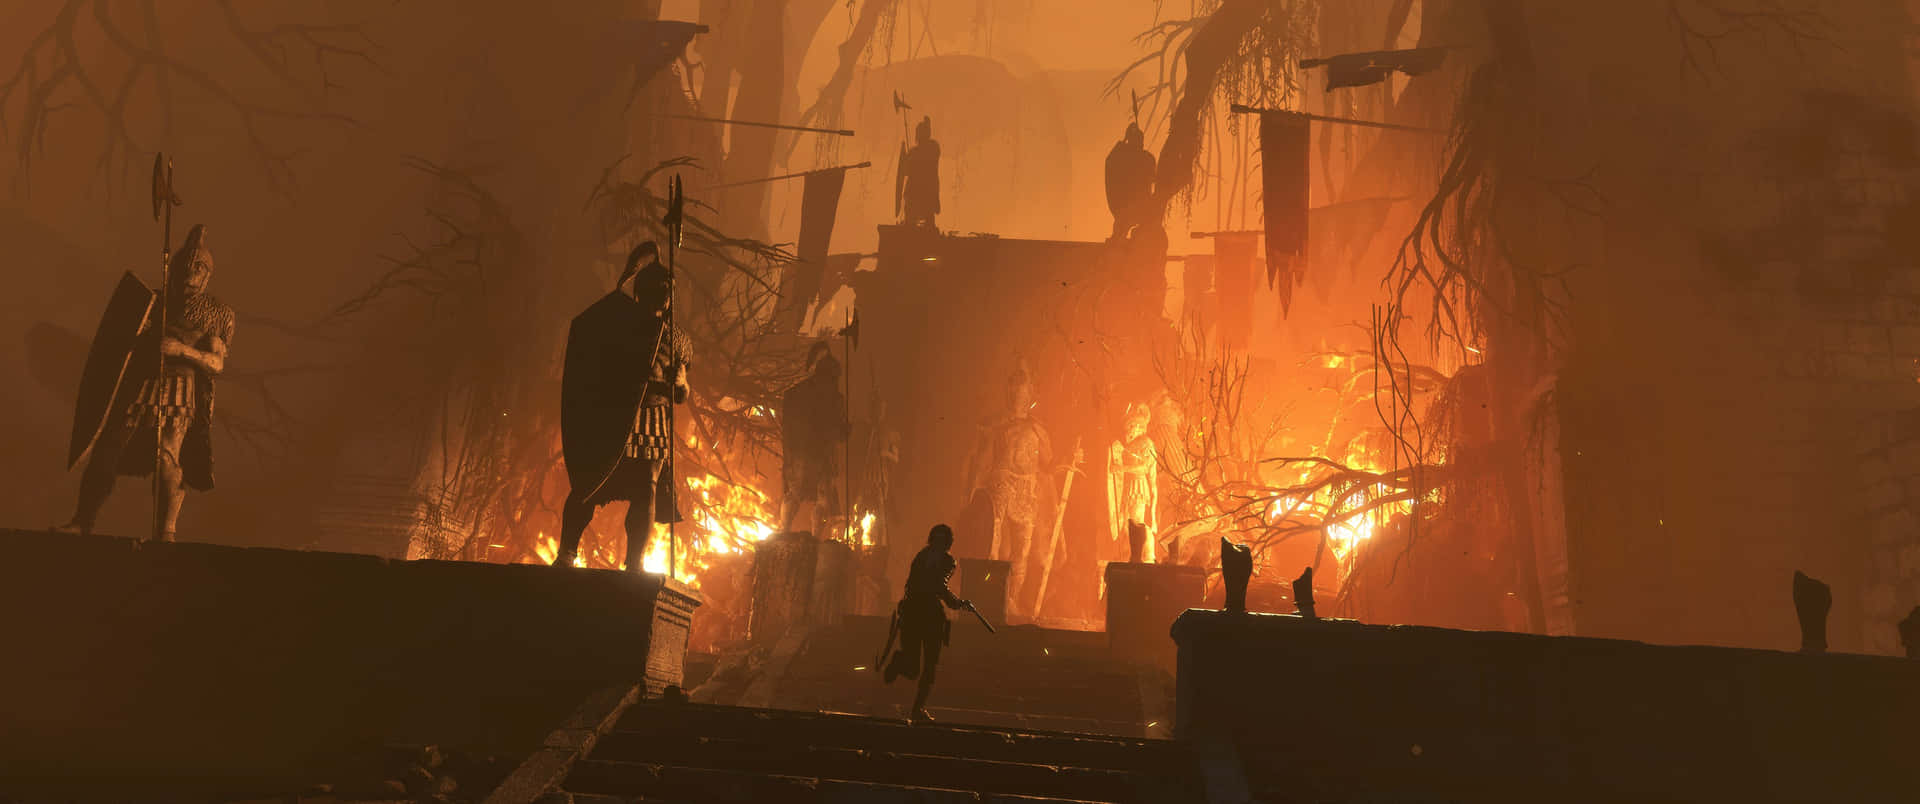 Denförlorade Staden 3440x1440p Rise Of The Tomb Raider Bakgrund.